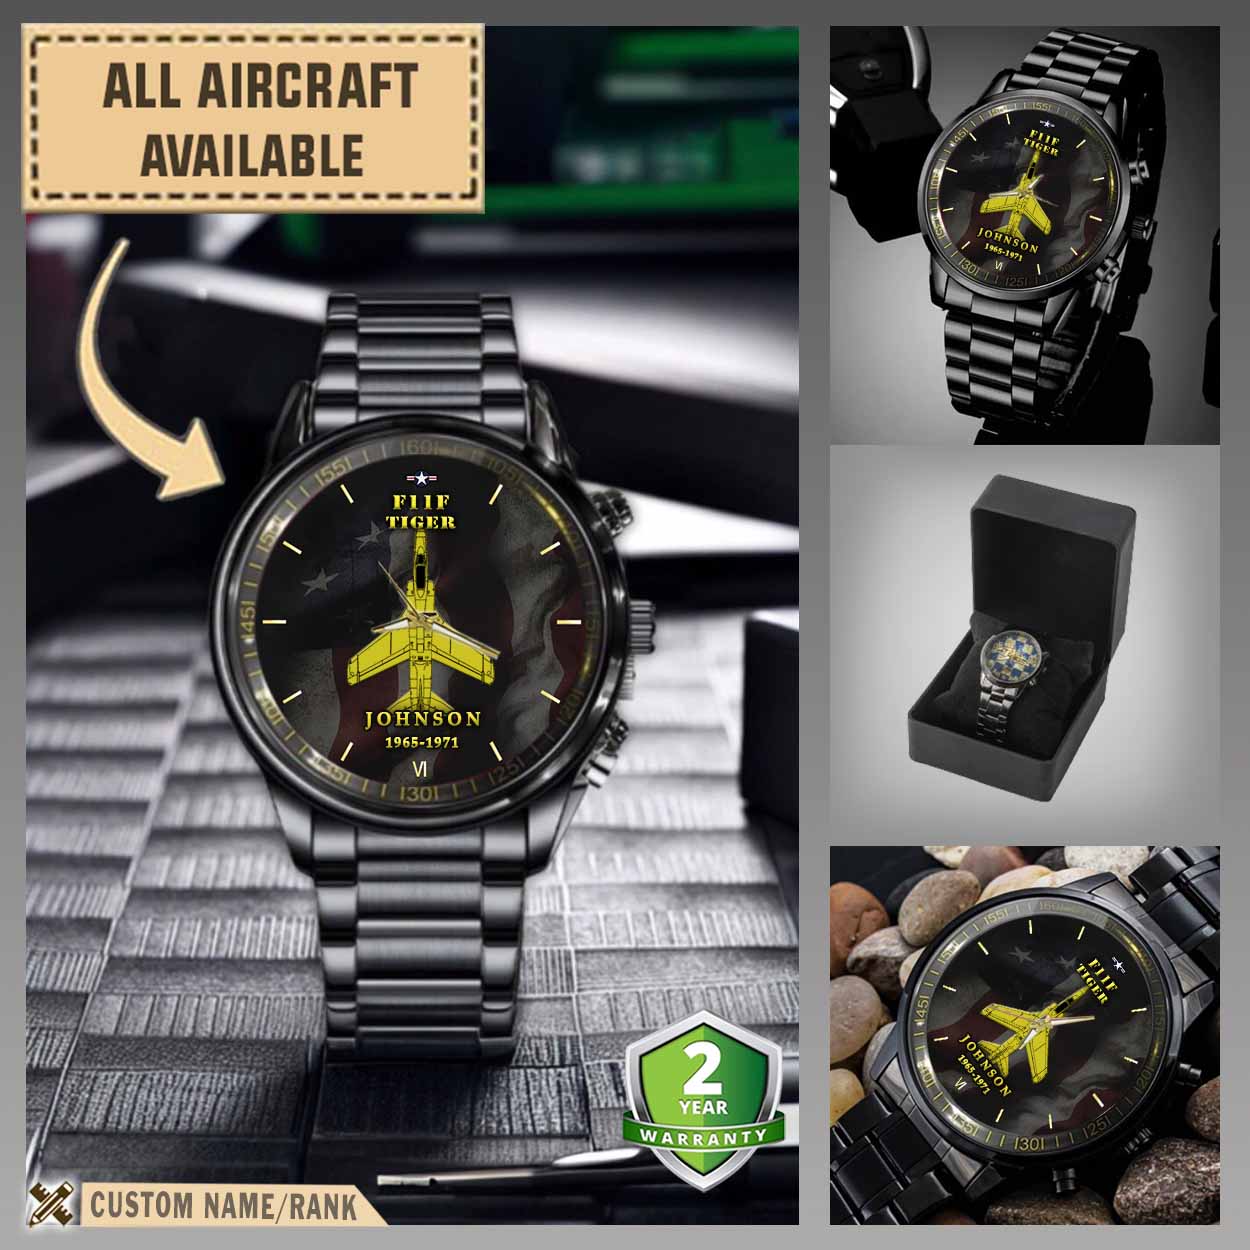 f11f tigeraircraft black wrist watch 5ny26